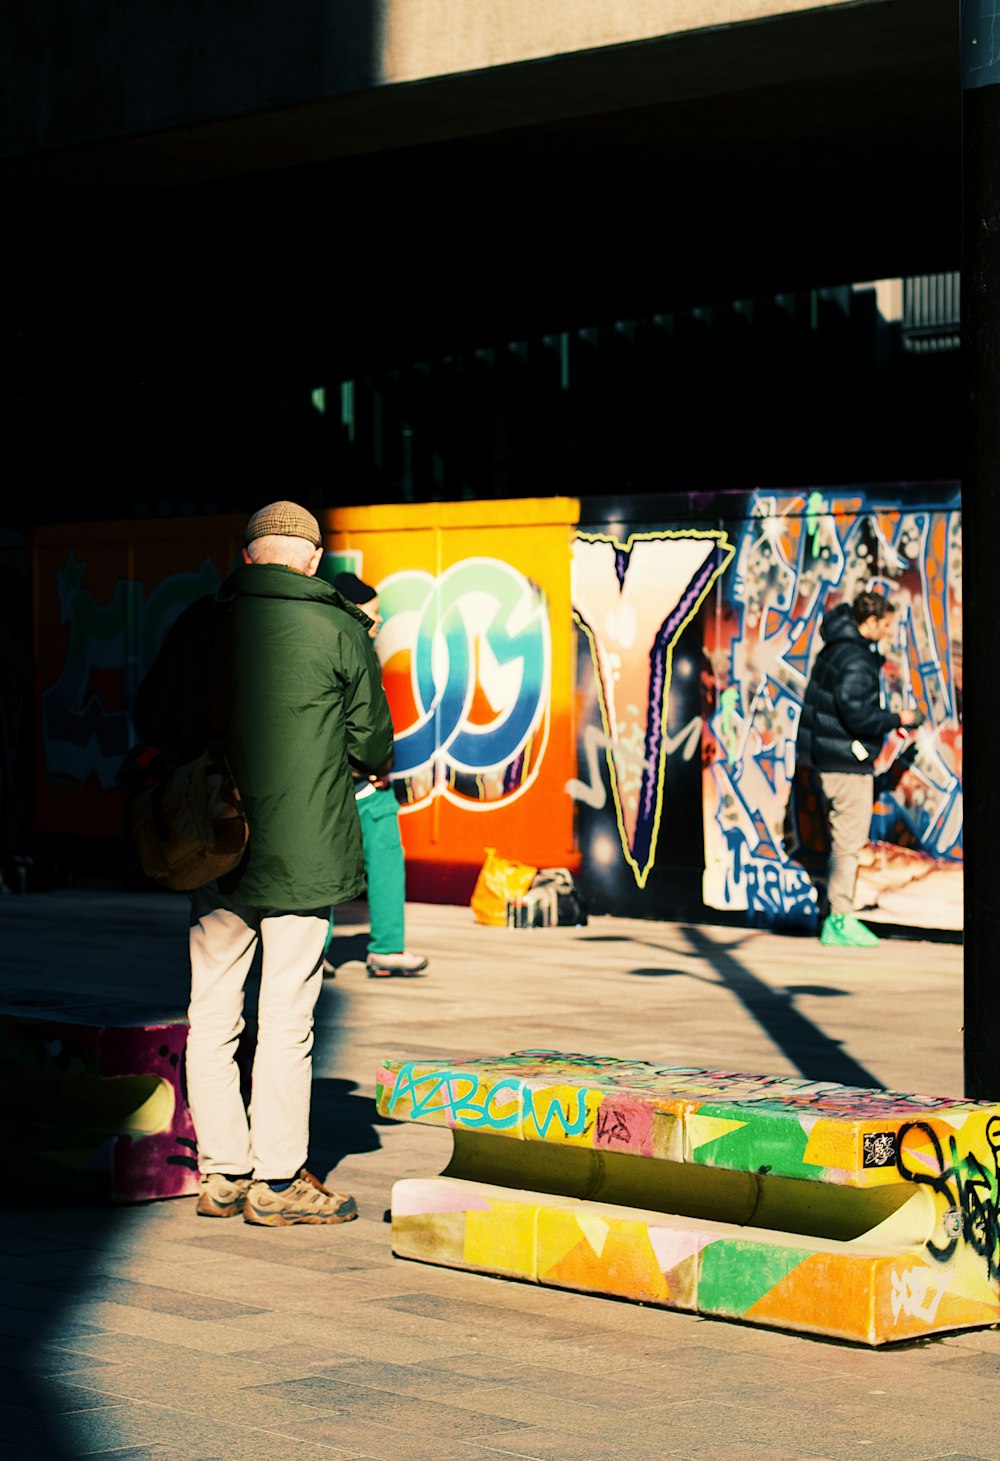 Un homme debout à côté d’un poteau avec des graffitis dessus